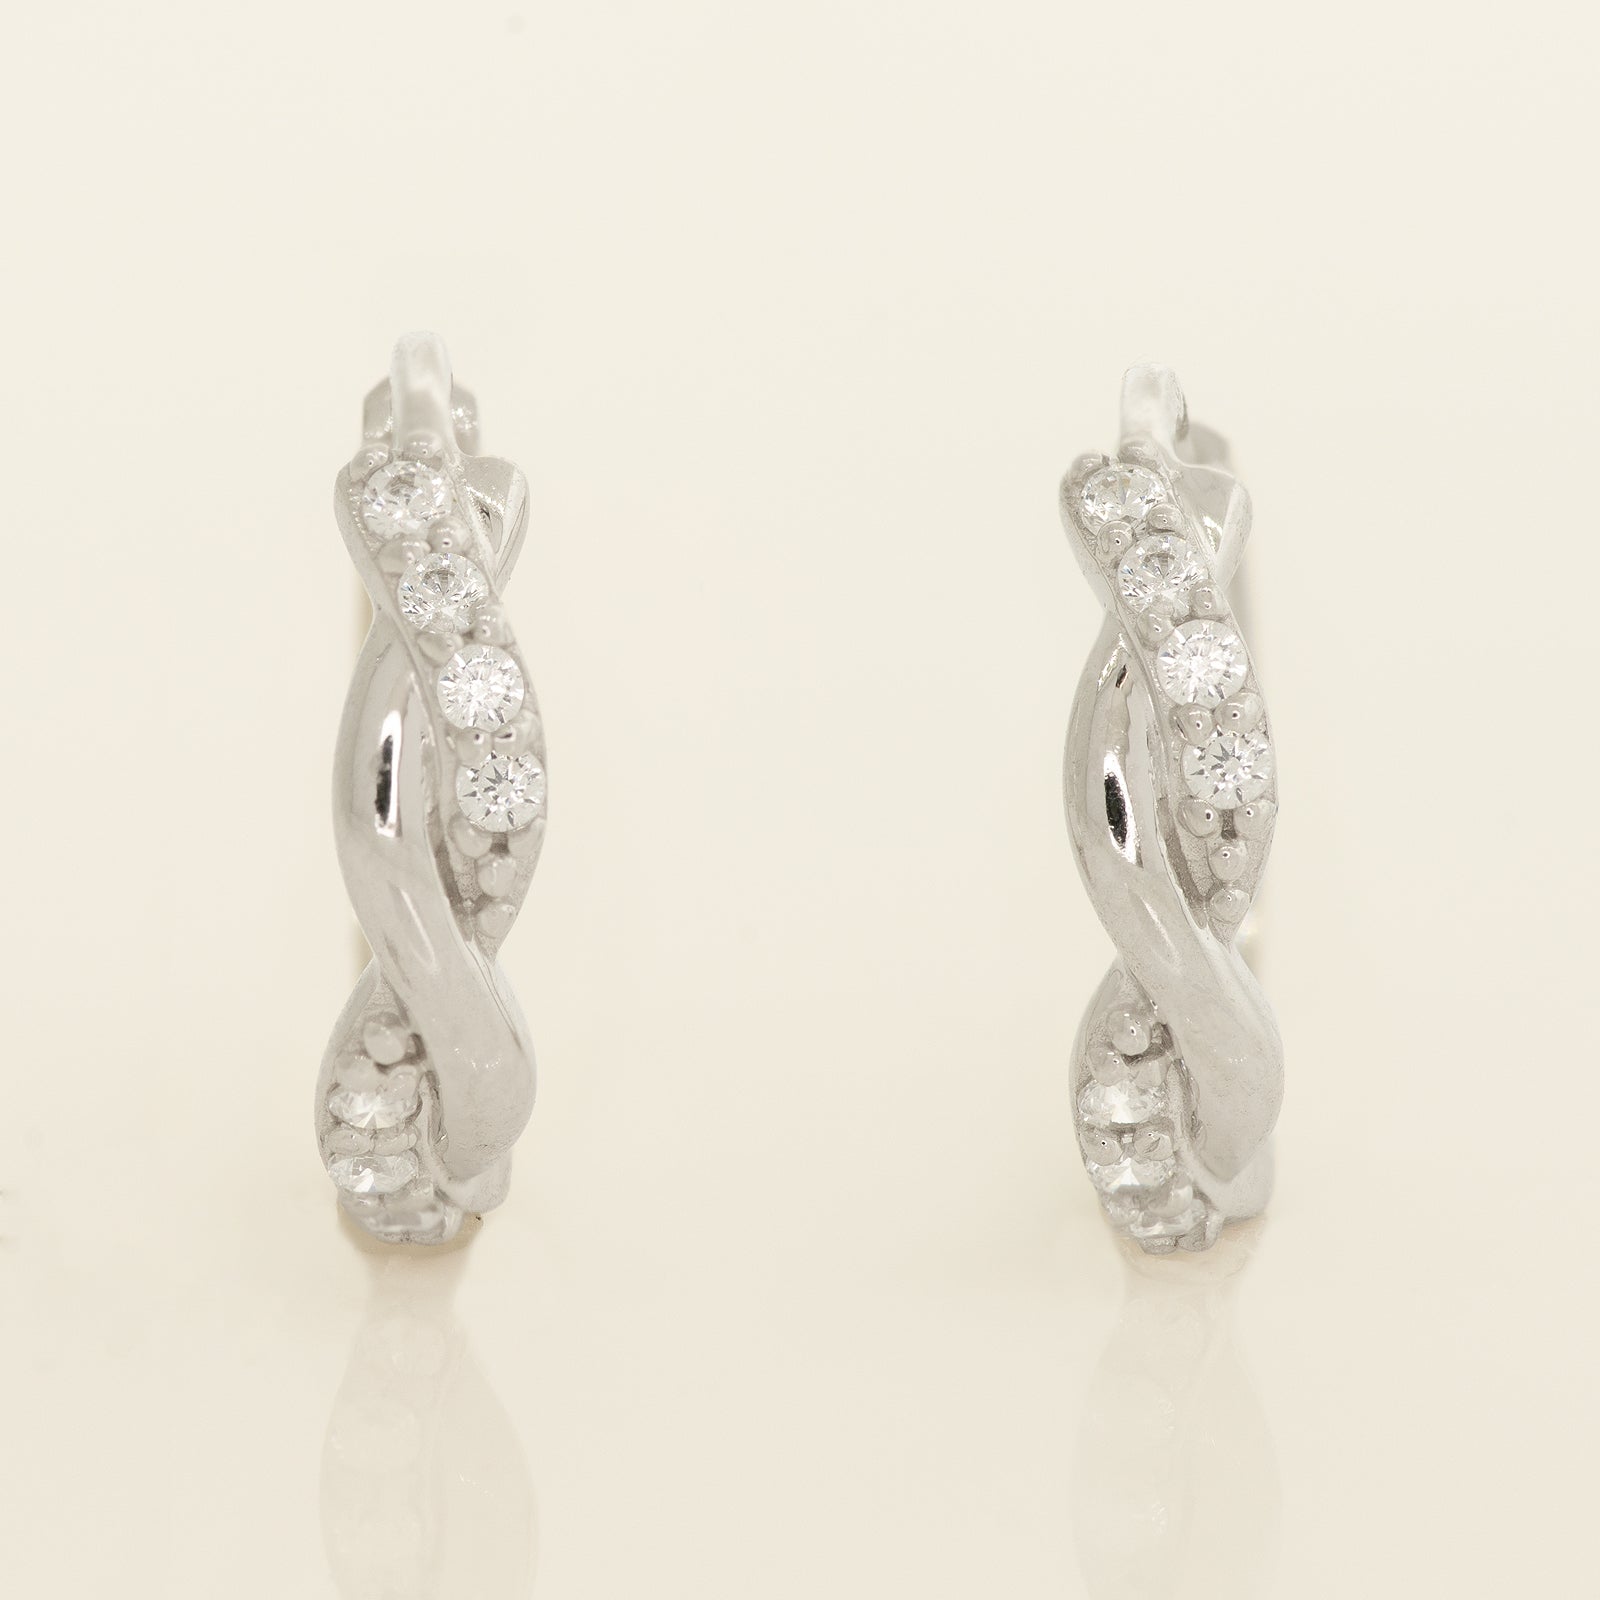 Buy white gold Cubic Zirconia Infinity Huggie Hoop Earrings 